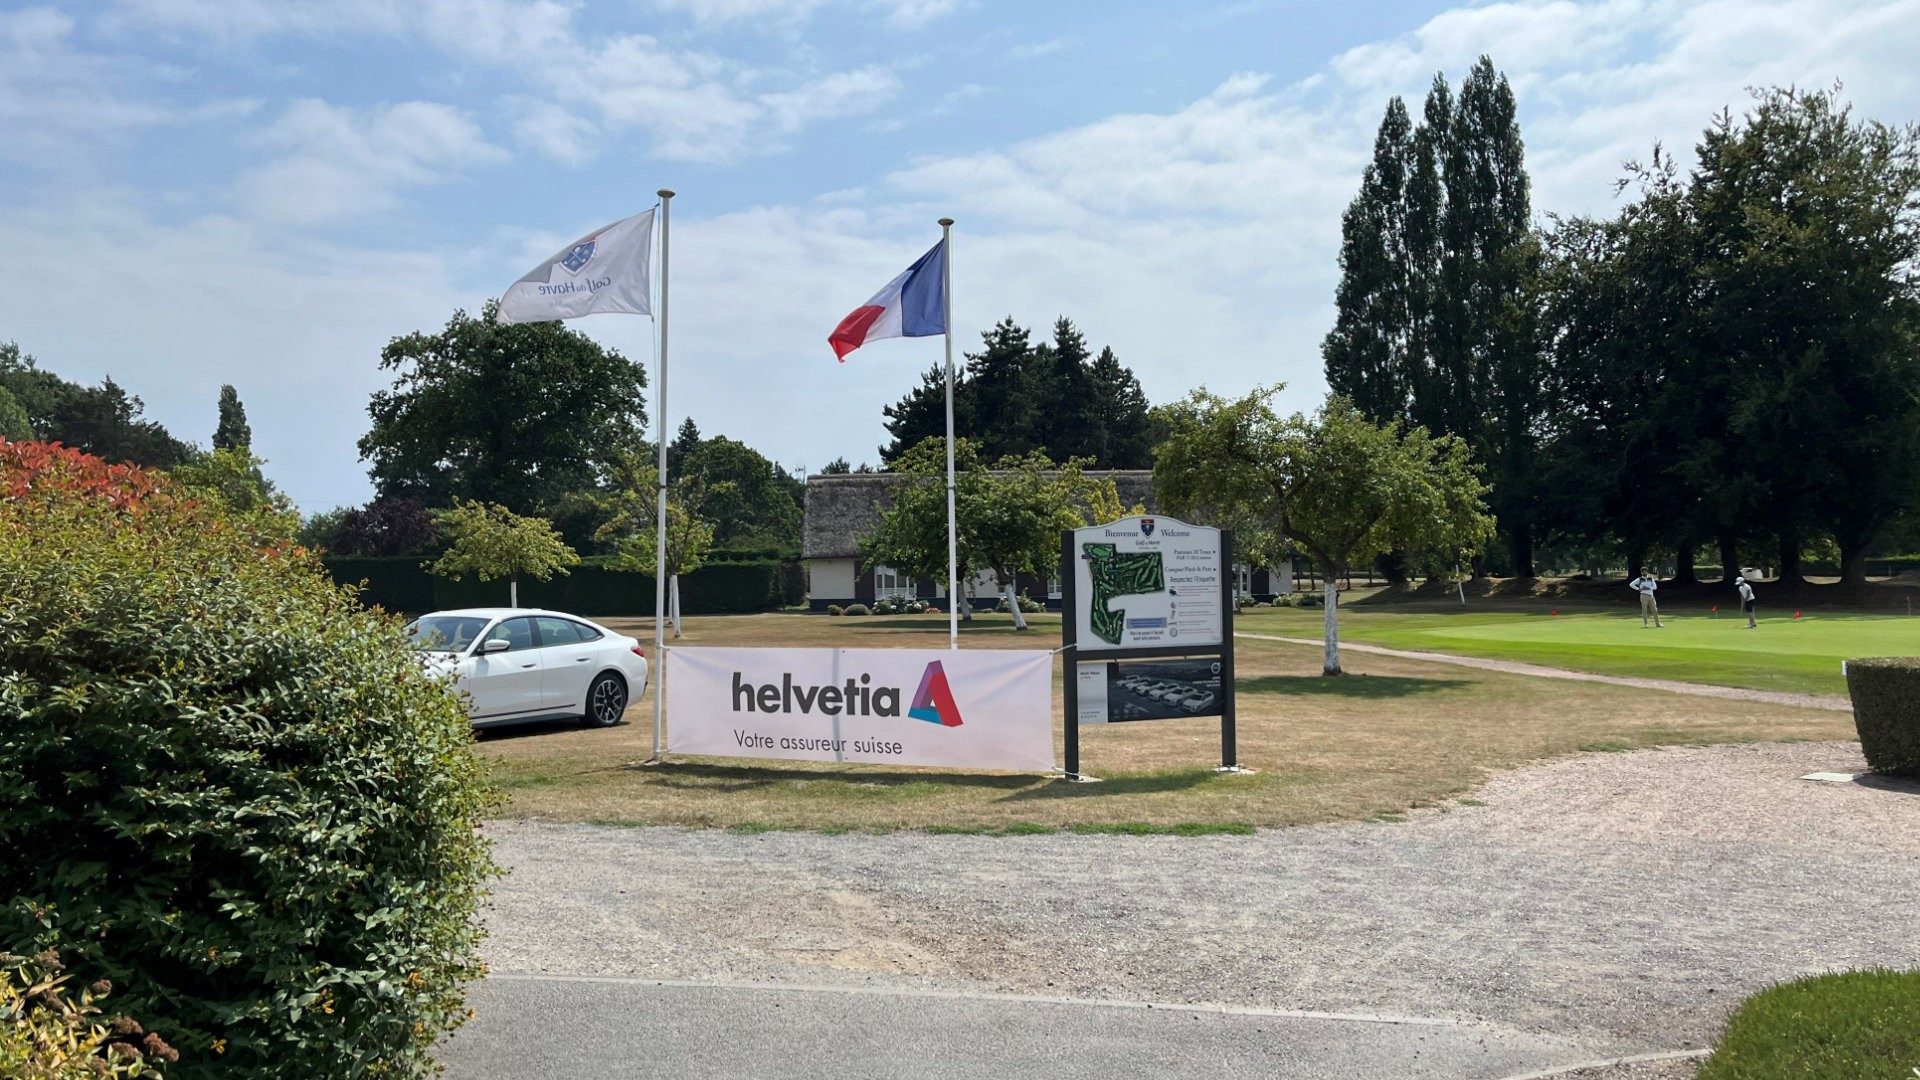 Helvetia-partenaire-du-Grand-Prix-de-la-Cote-d-Albatre-01